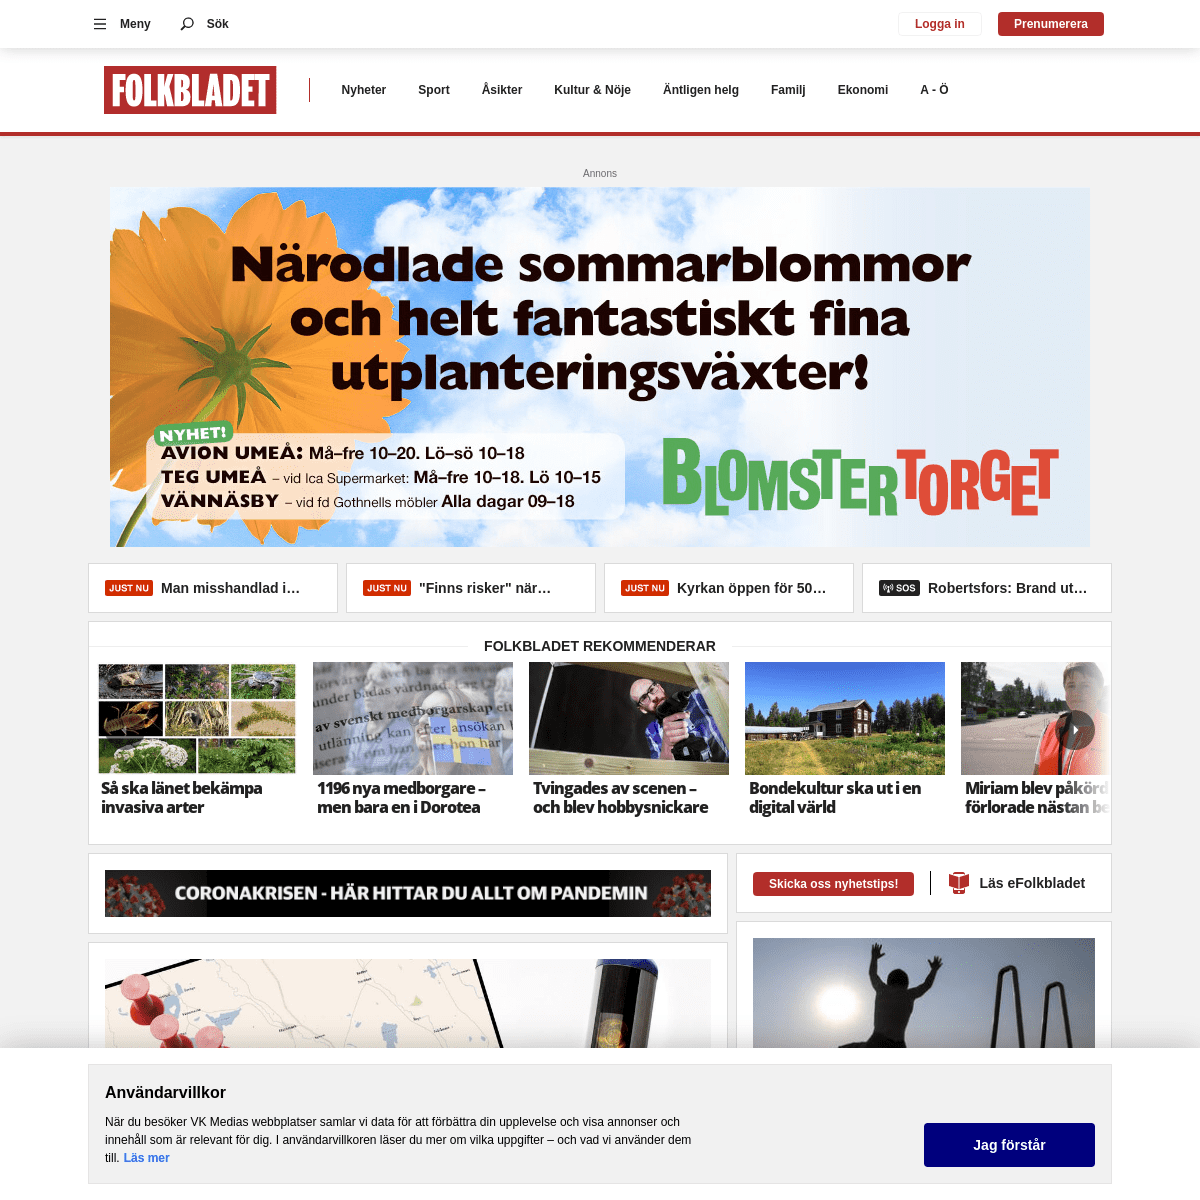 A complete backup of https://folkbladet.nu